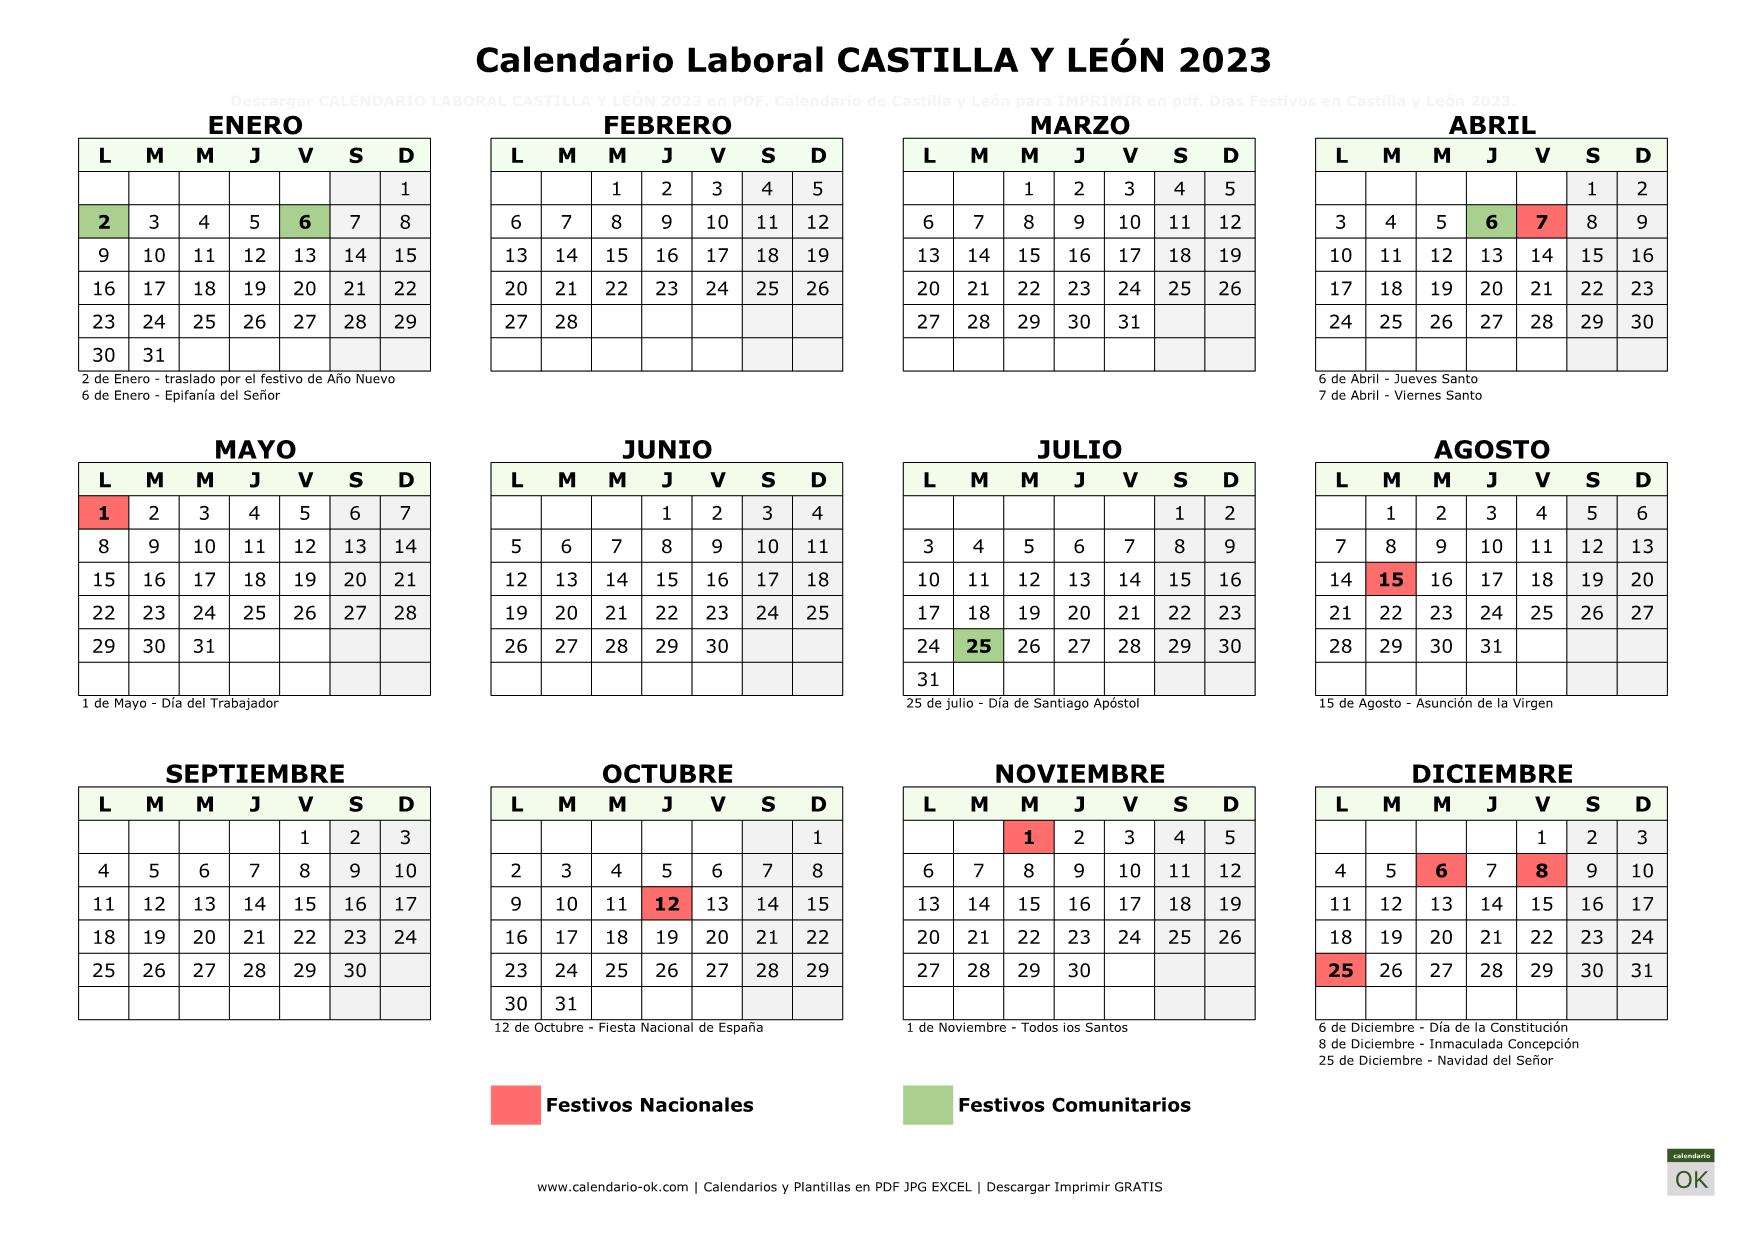 Calendario Laboral CASTILLA Y LEÓN 2023 horizontal